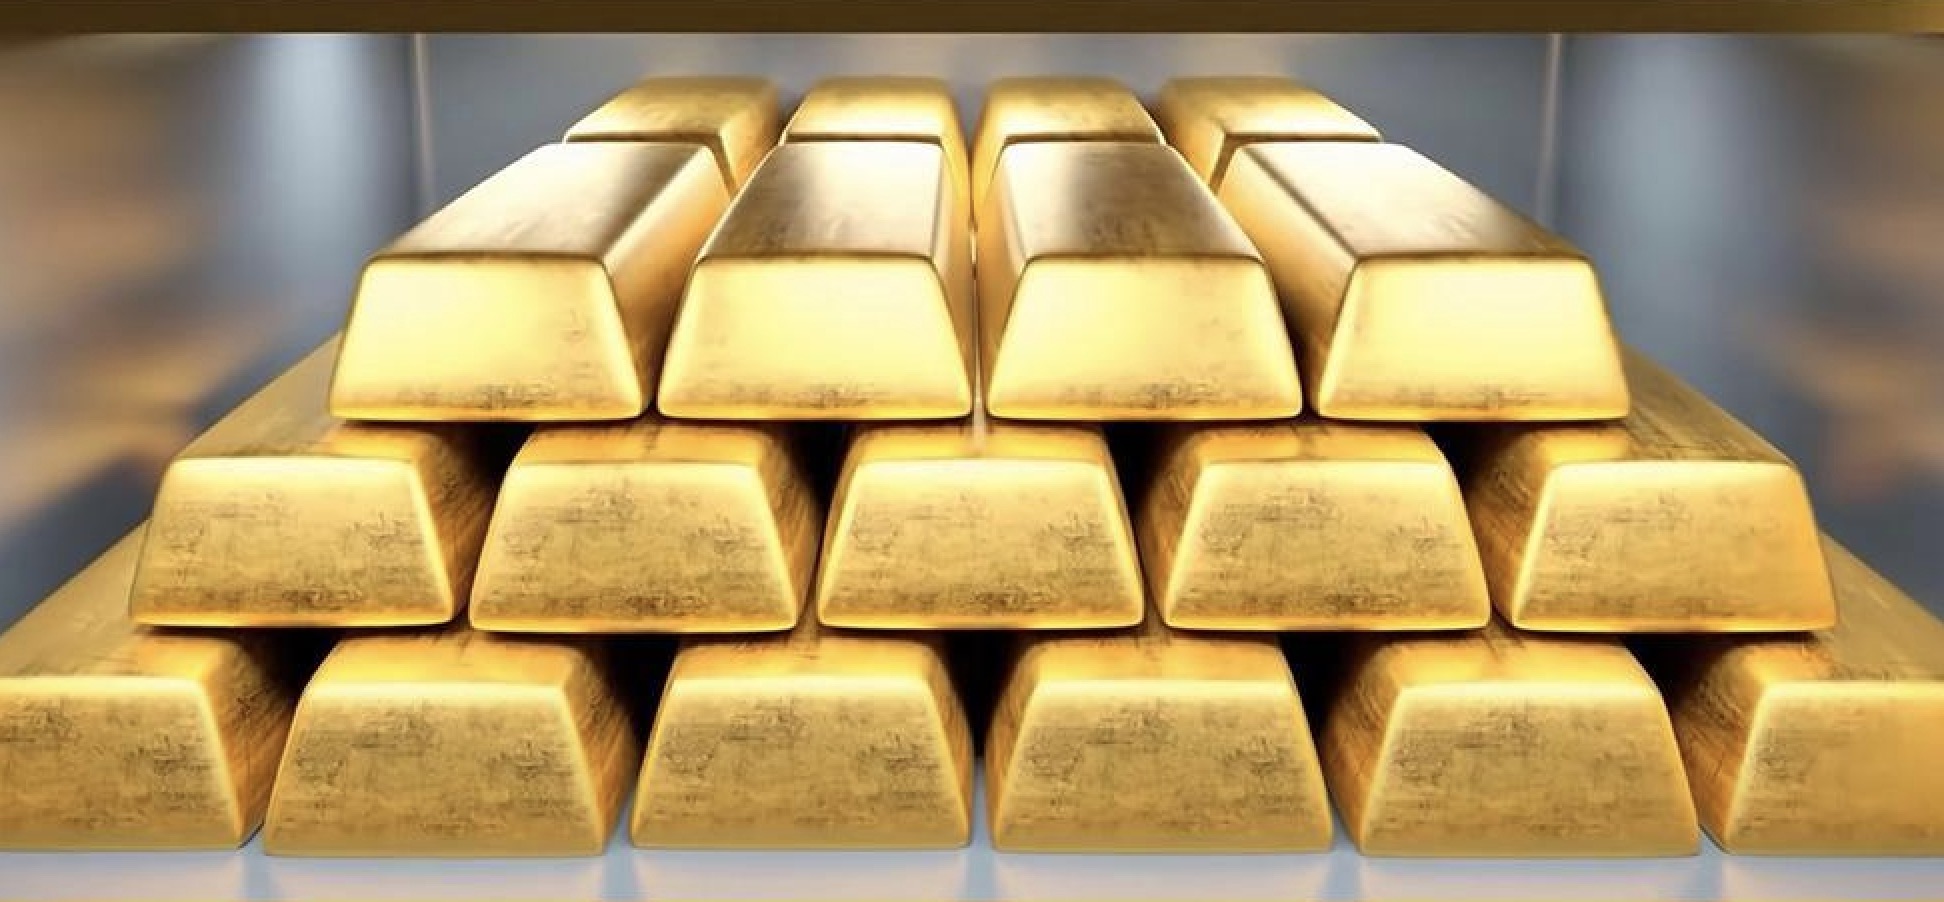 Peringatan Perdagangan Emas: Data PCE menunjukkan bahwa inflasi AS melambat di bulan Februari, dan harga emas dibuka lebih tinggi lebih dari $10, menetapkan rekor tertinggi baru sepanjang masa